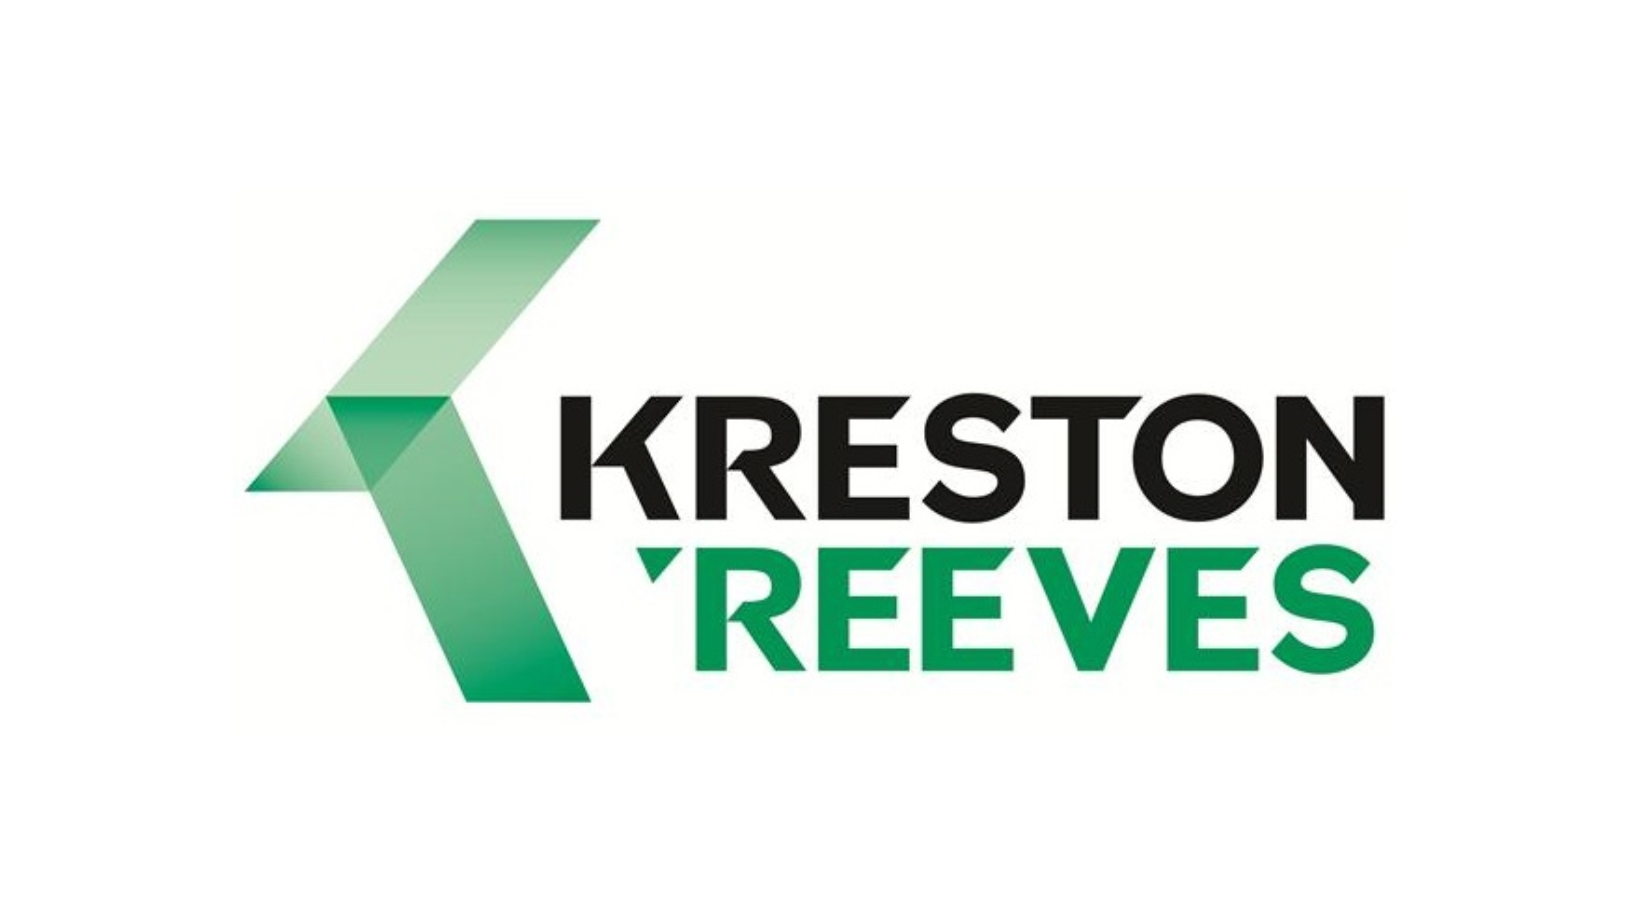 Kreston Reeves Finance Focus Webinar